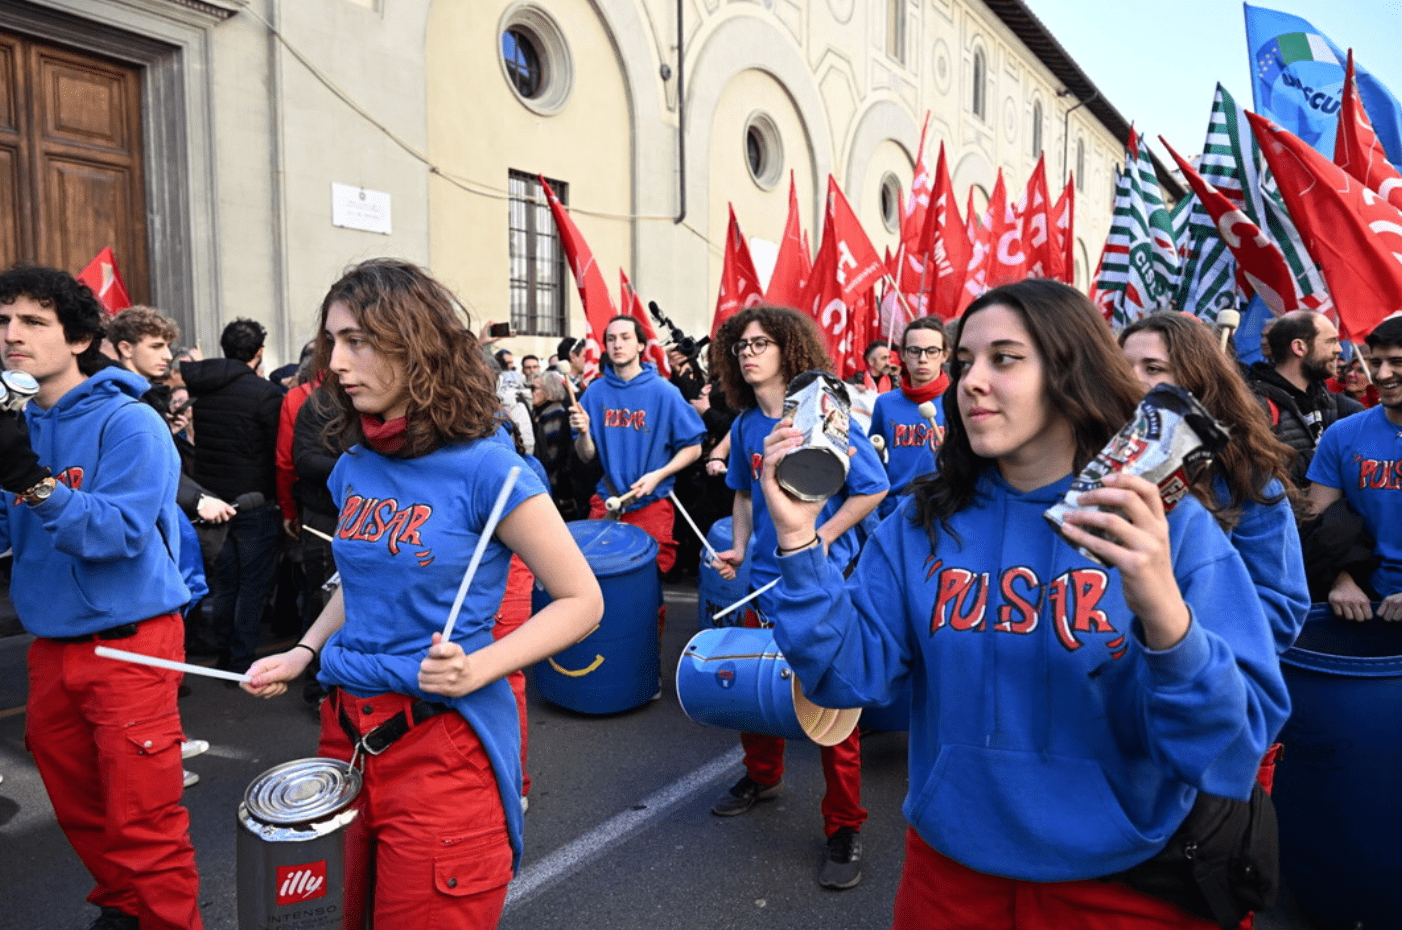 Firenze in piazza per la Costituzione, la scuola e contro il fascismo